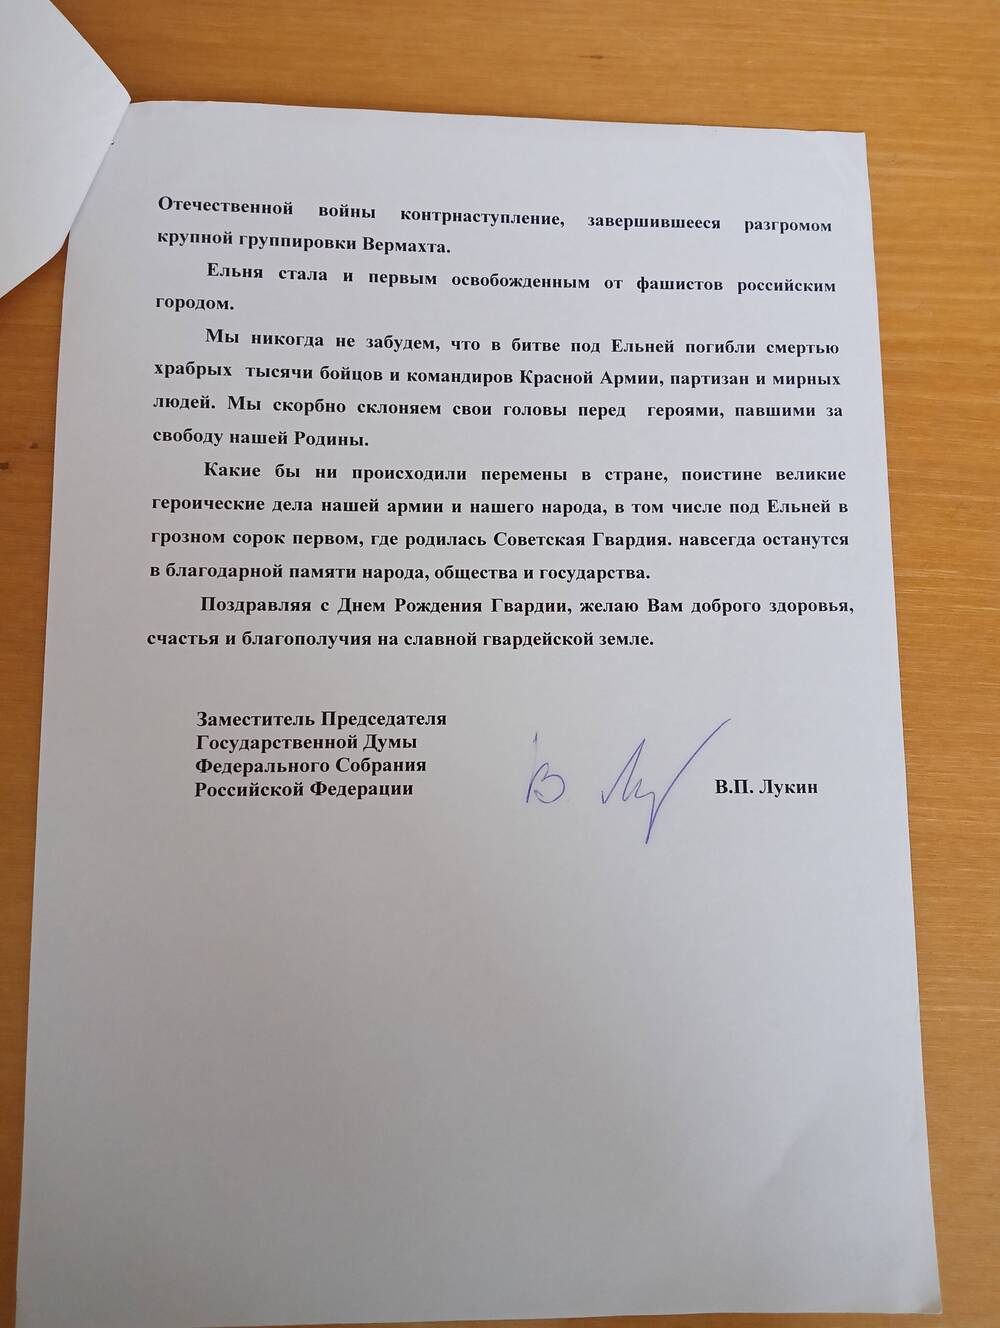 Приветственный адрес в честь 60-летия Советской Гвардии от заместителя председателя Государственной Думы В.П. Лукина